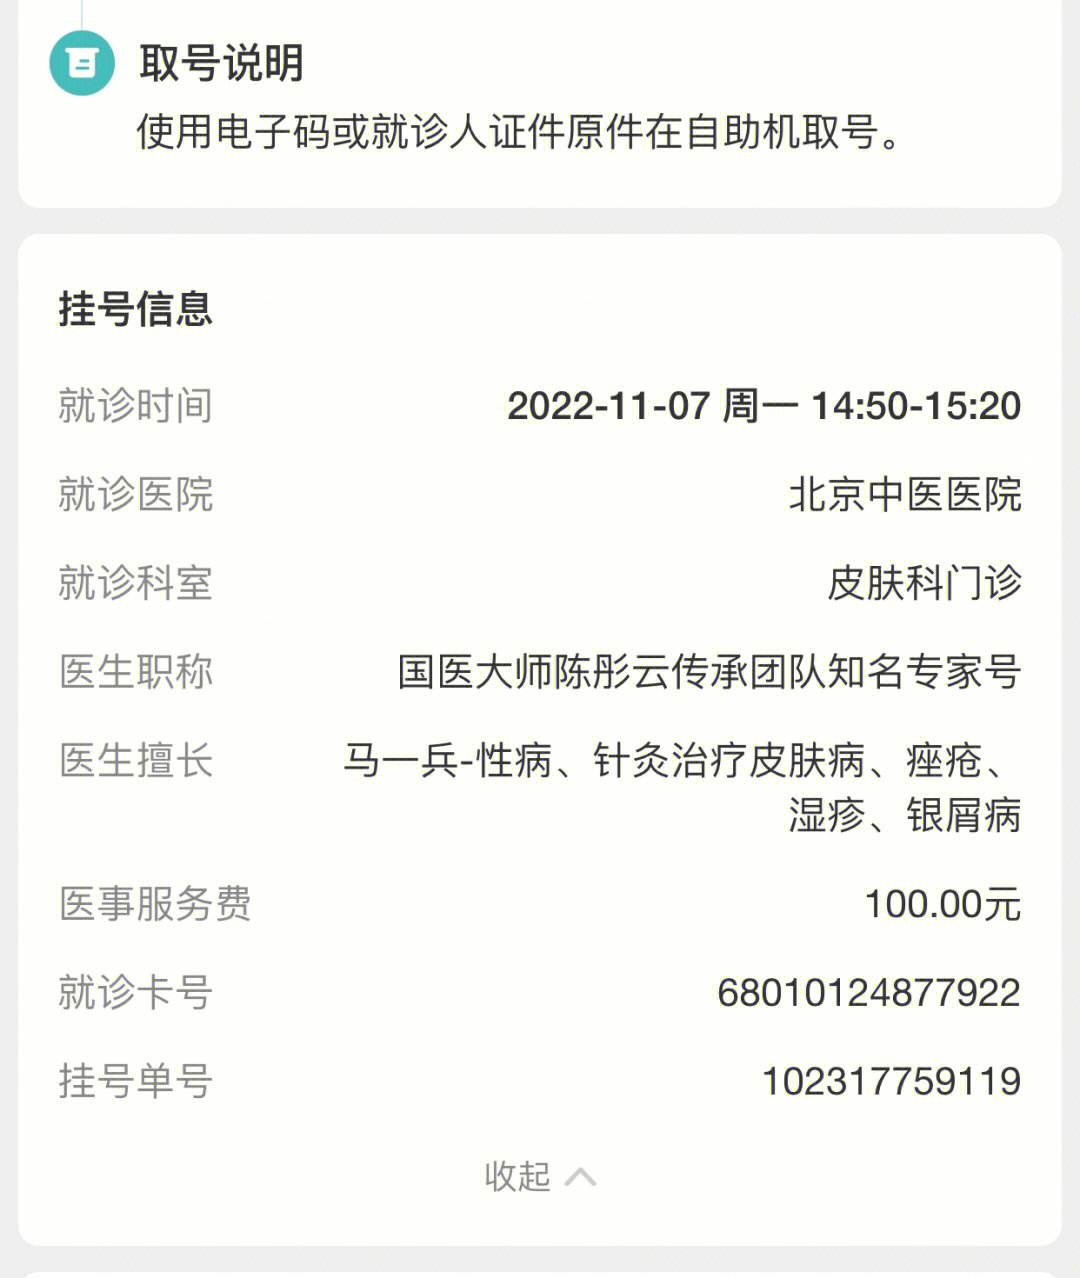 关于广州市第一人民医院鹤洞分院医院代诊预约挂号，诚信靠谱合理收费的信息